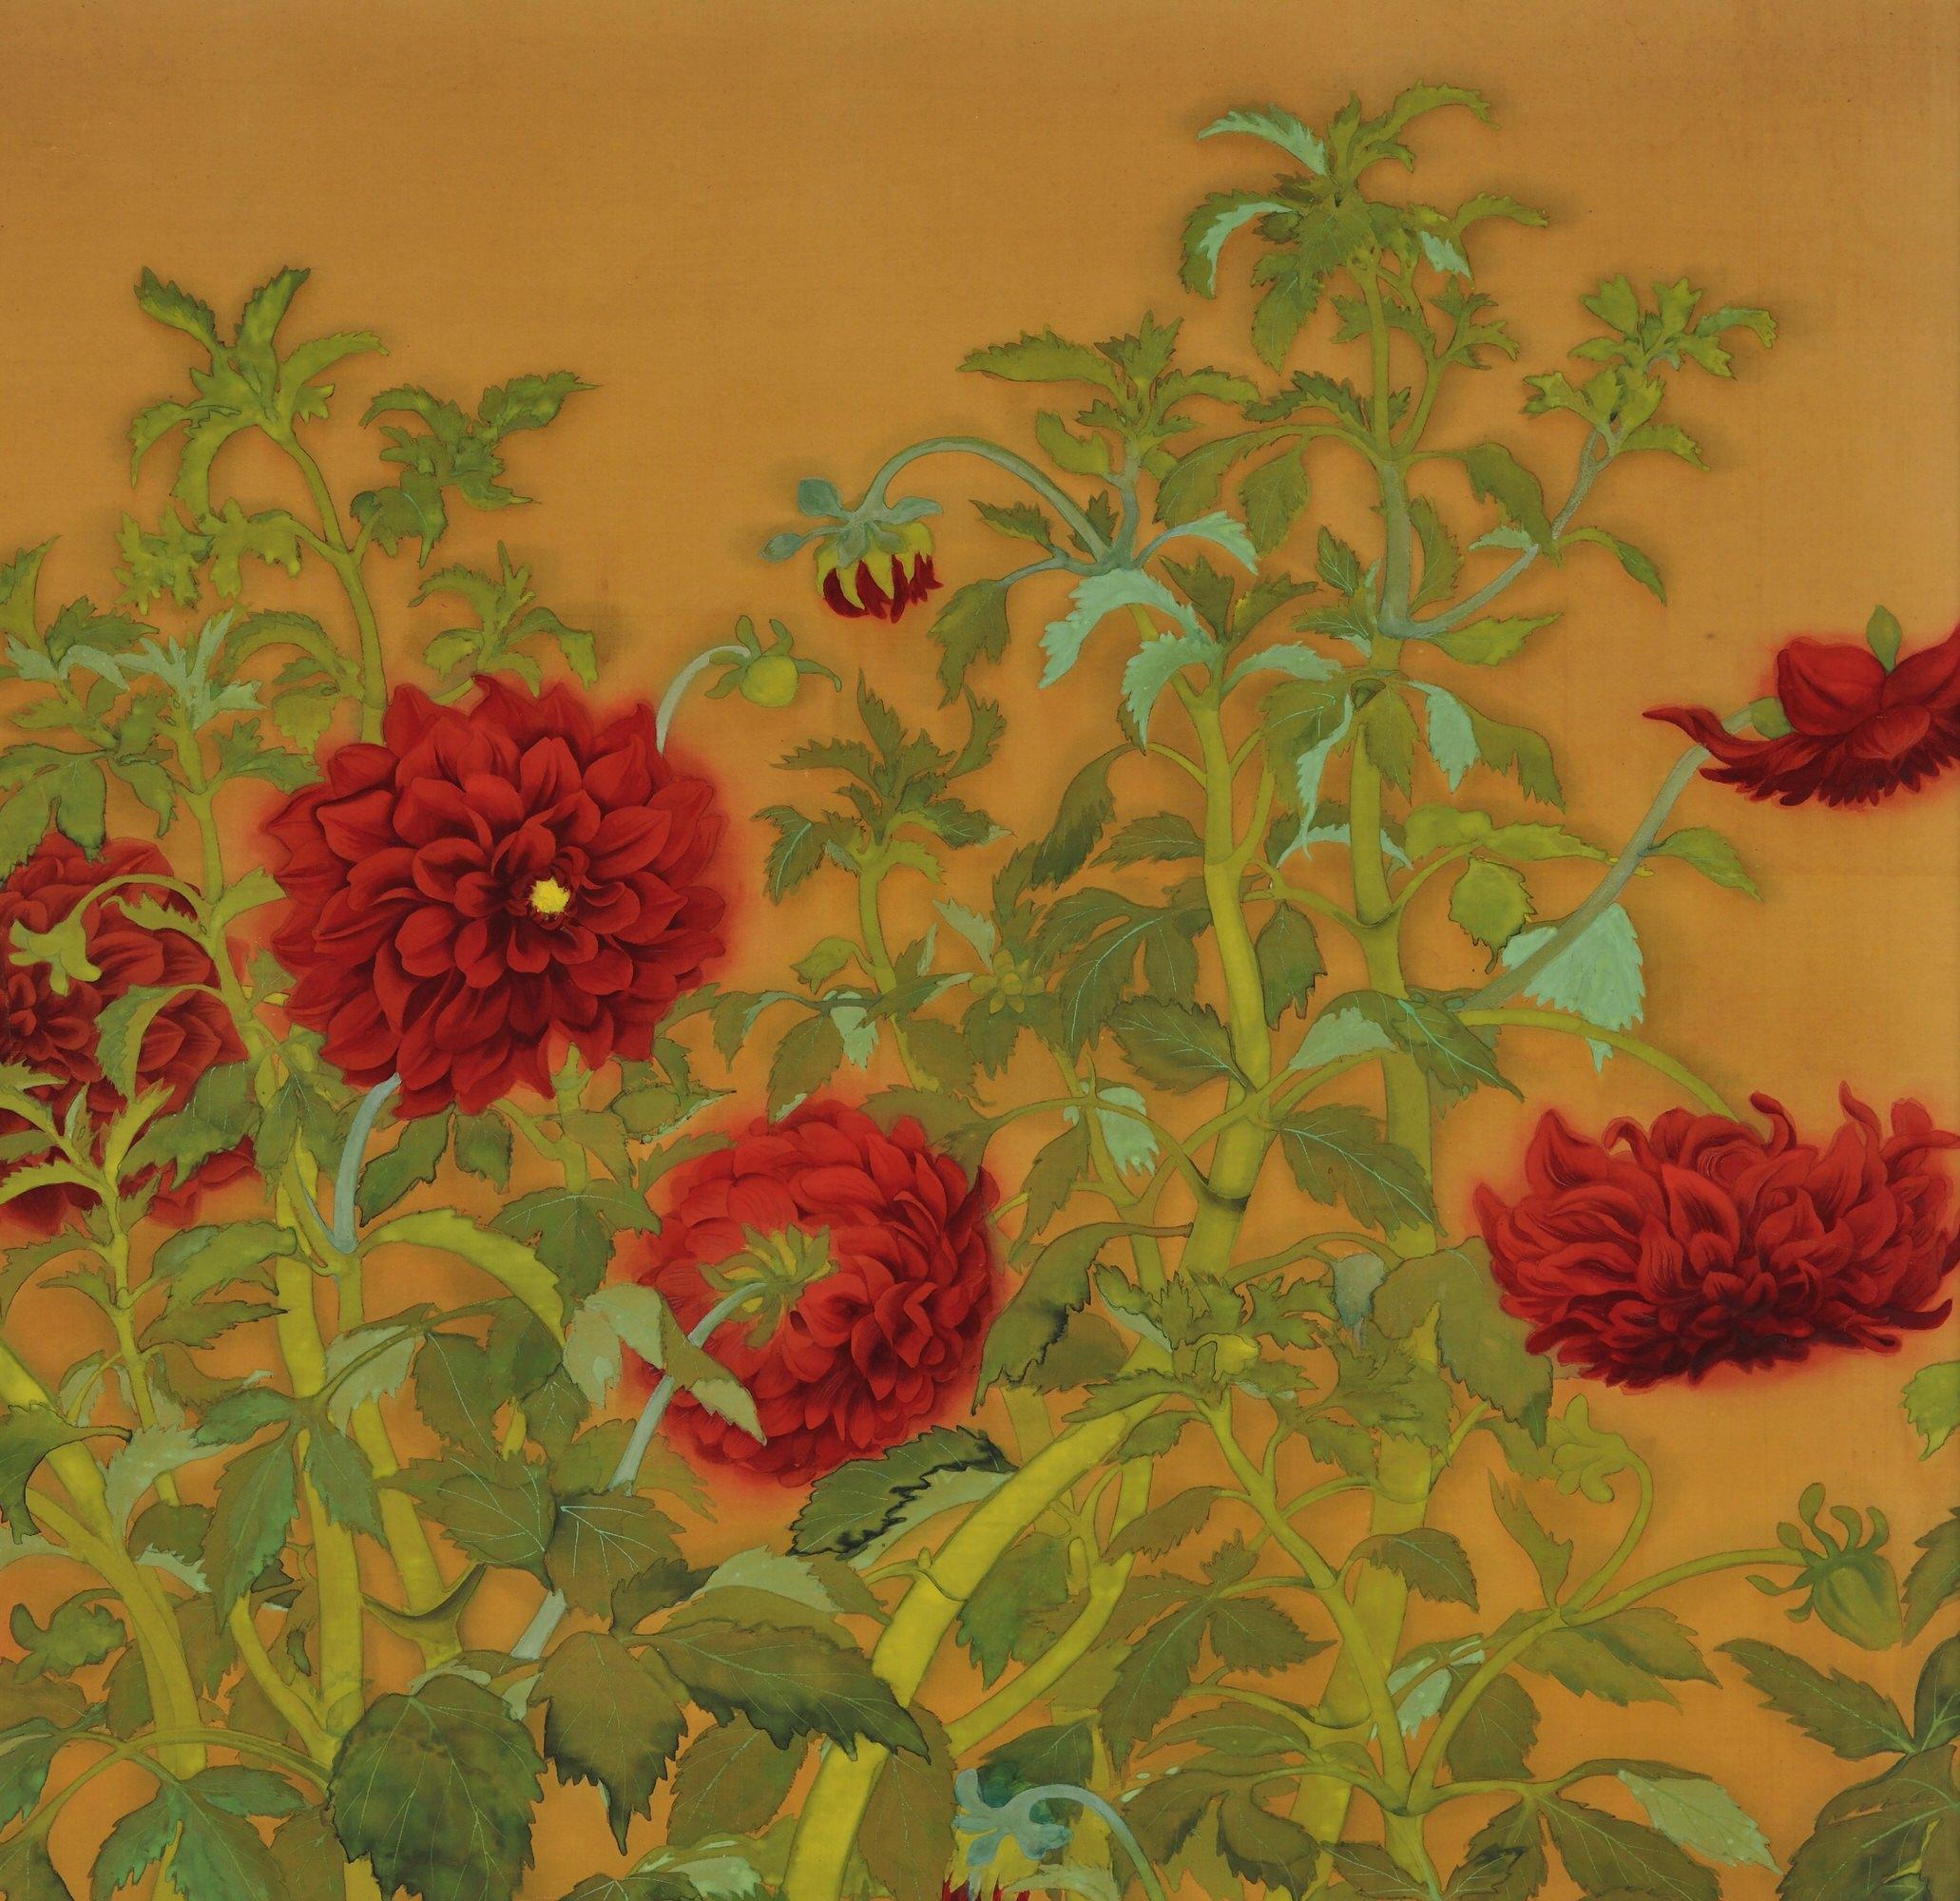 Tanaka Tessen (geb. 1890)

Dahlien und Hähne

Taisho-Periode, um 1920

Gerahmtes Gemälde. Mineralische Pigmente und Tinte auf Seide.

Abmessungen (gerahmt):

H. 159 cm x B. 97 cm x T. 2,5 cm (62,5